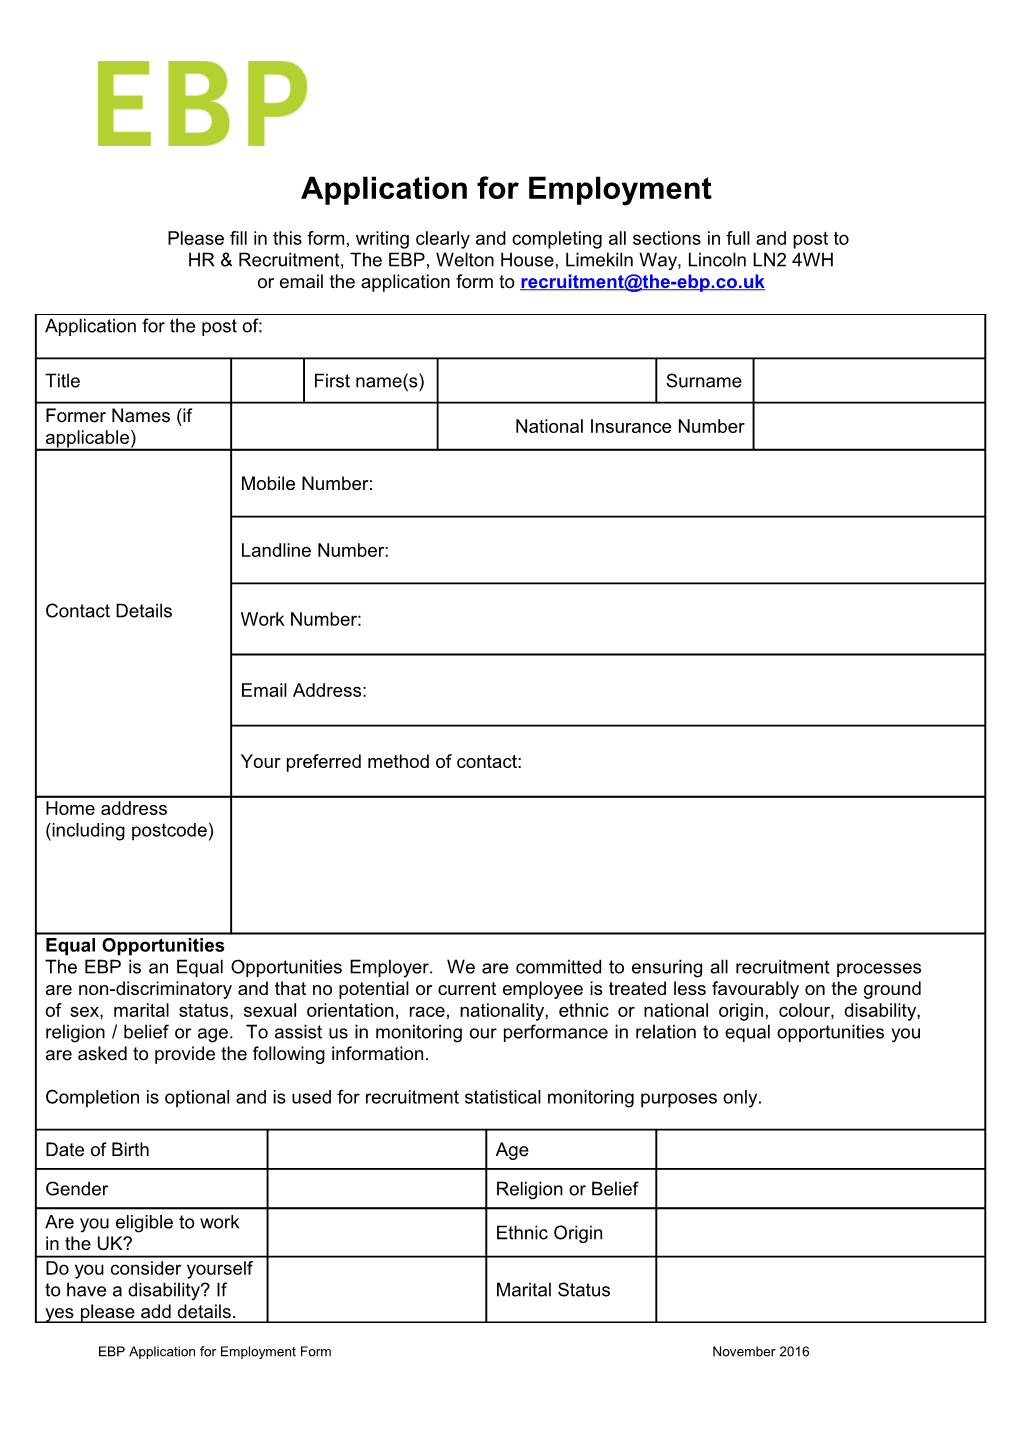 Registration of Interest Form s1